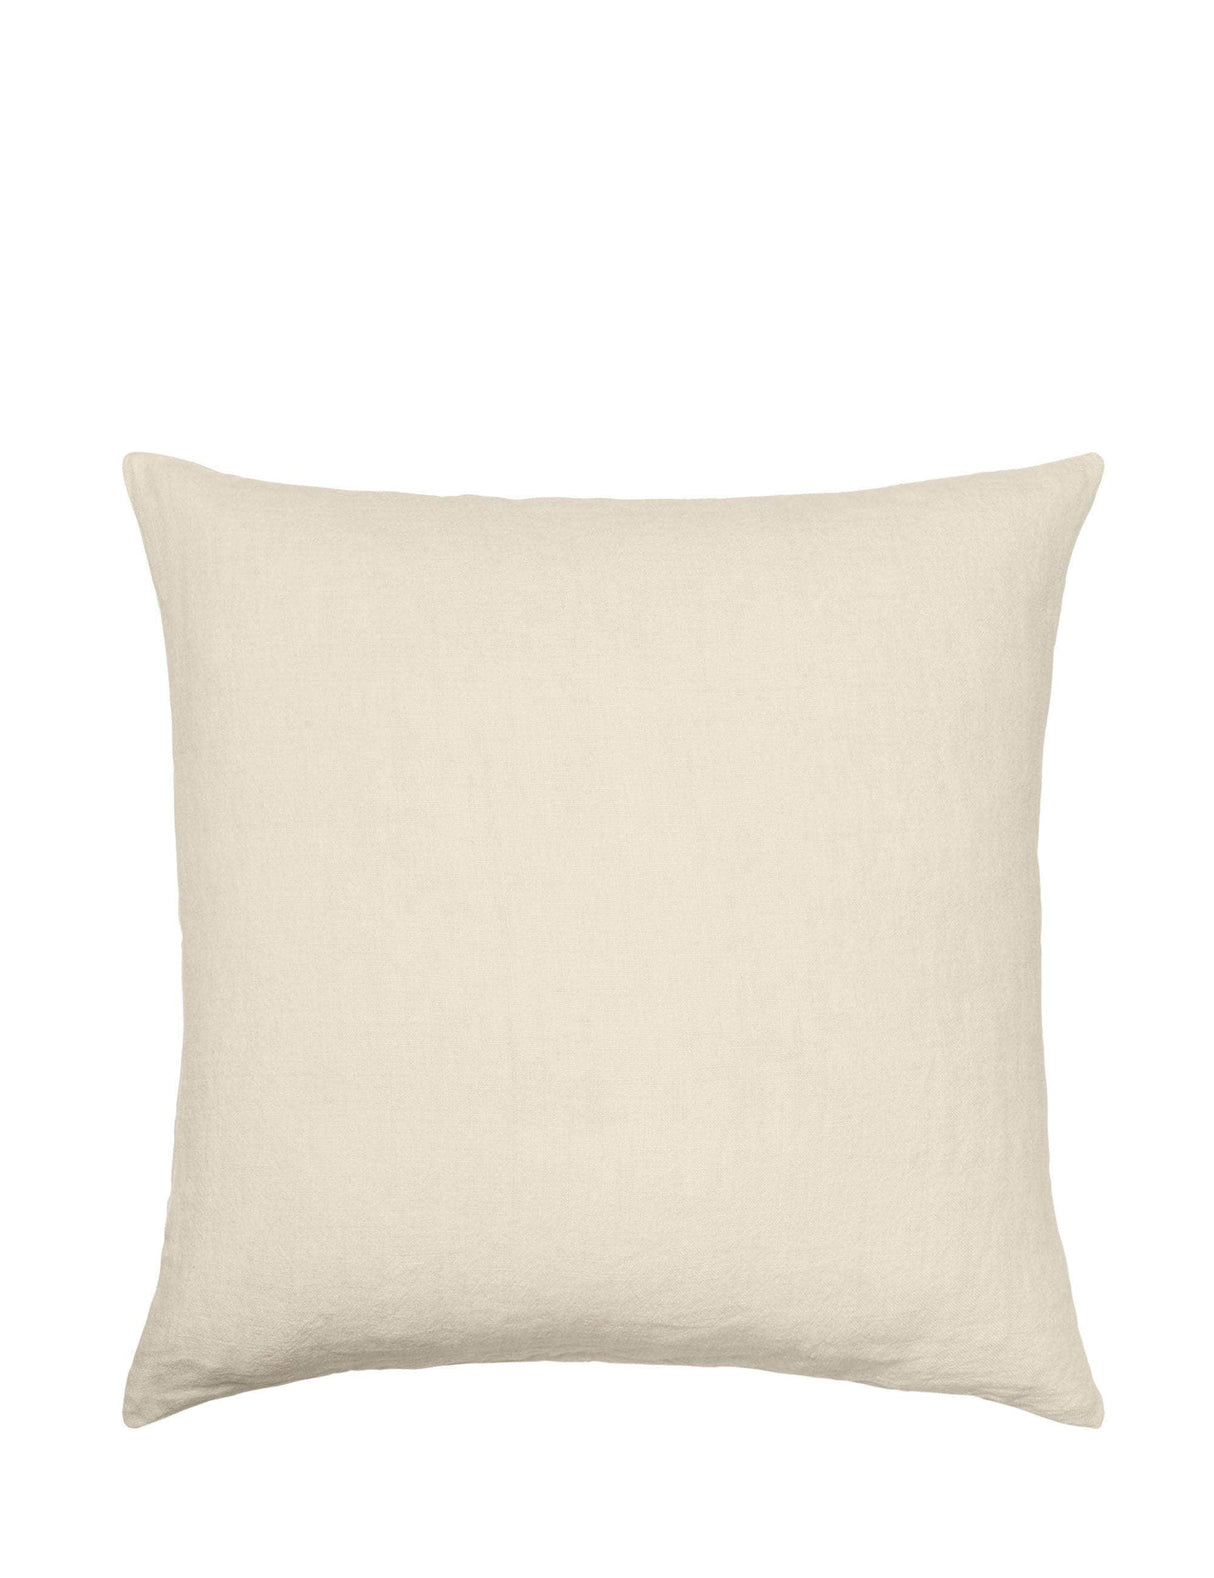 Cozy Living Luxury Light Linen Cushion Cover - DESERT